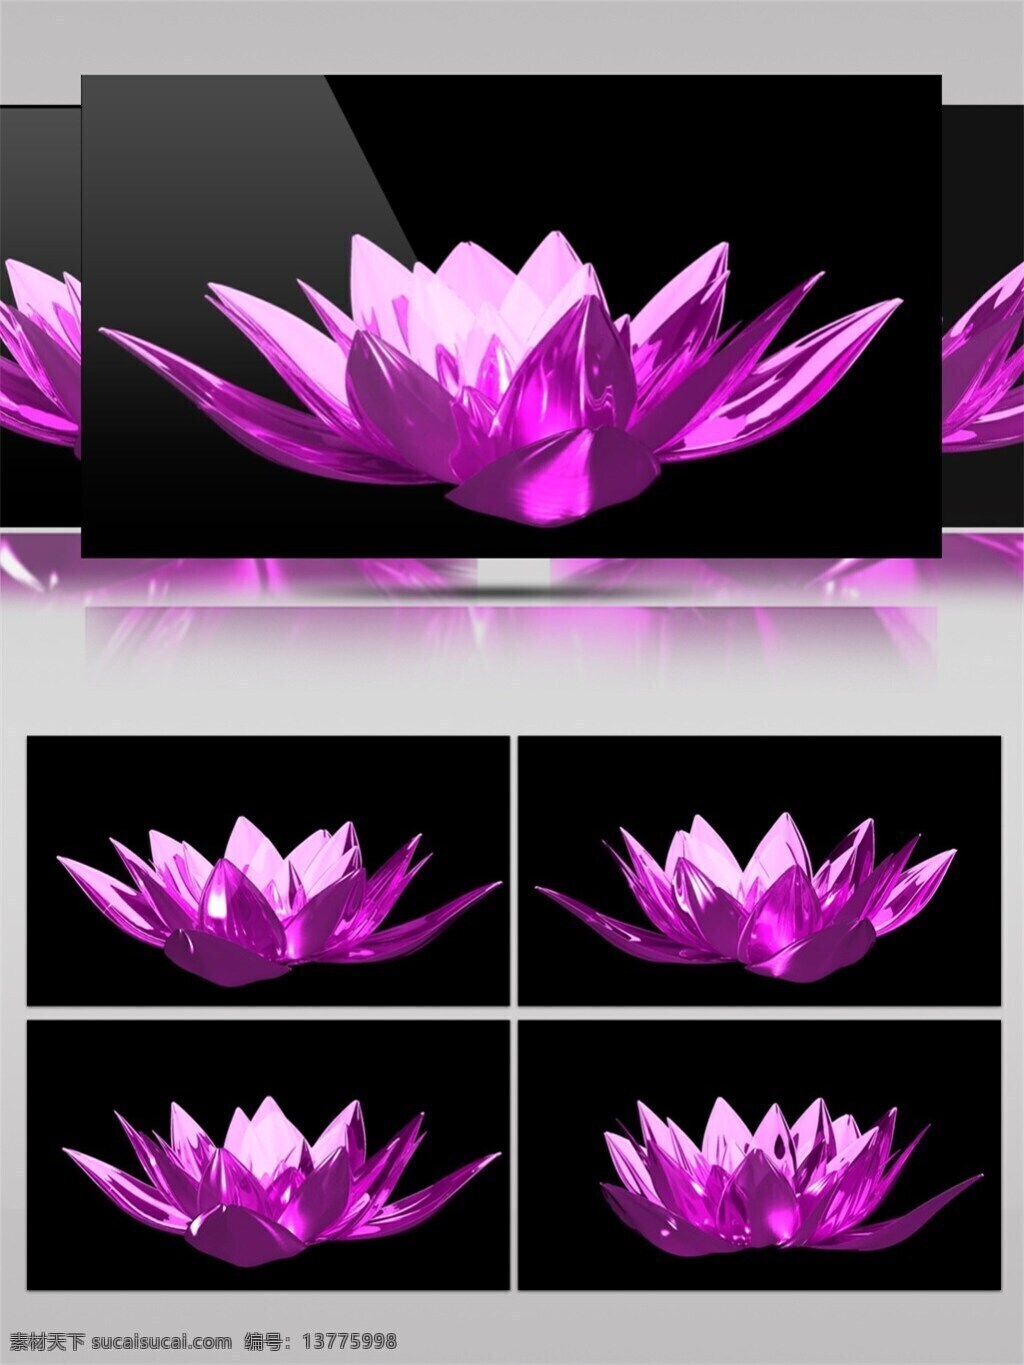 紫色 水晶 昙花 高清 视频 梦幻紫色 水晶花朵 唯美浪漫 视频素材 动态视频素材